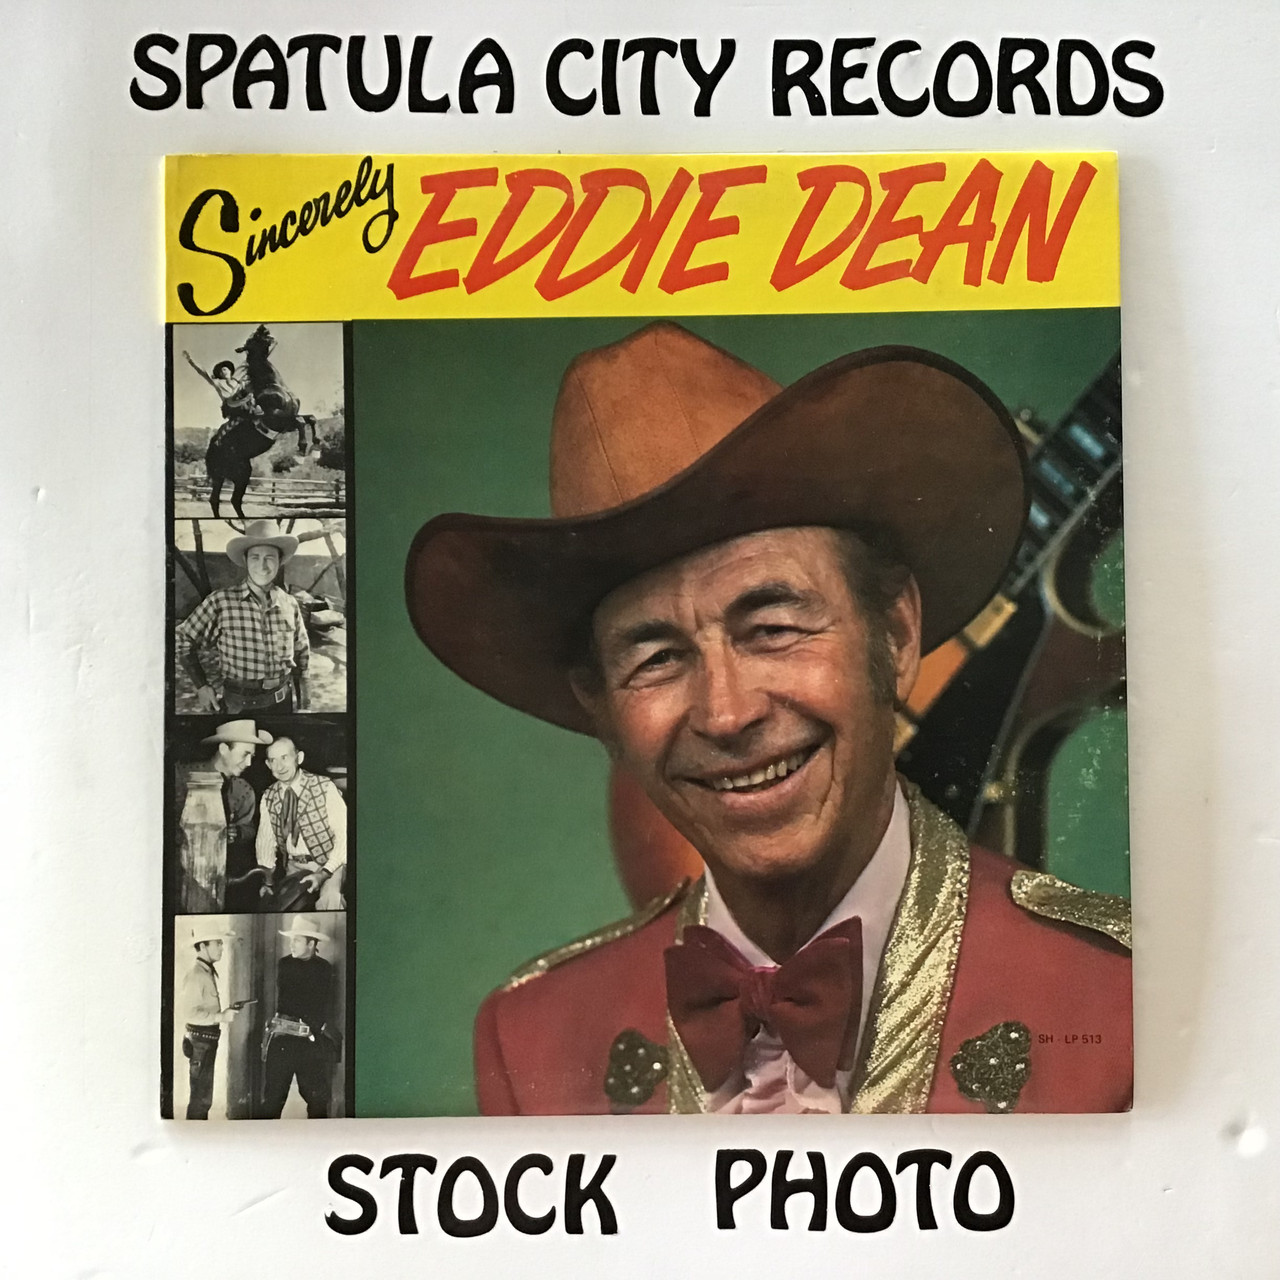 Eddie Dean - Sincerely Eddie Dean - vinyl record LP